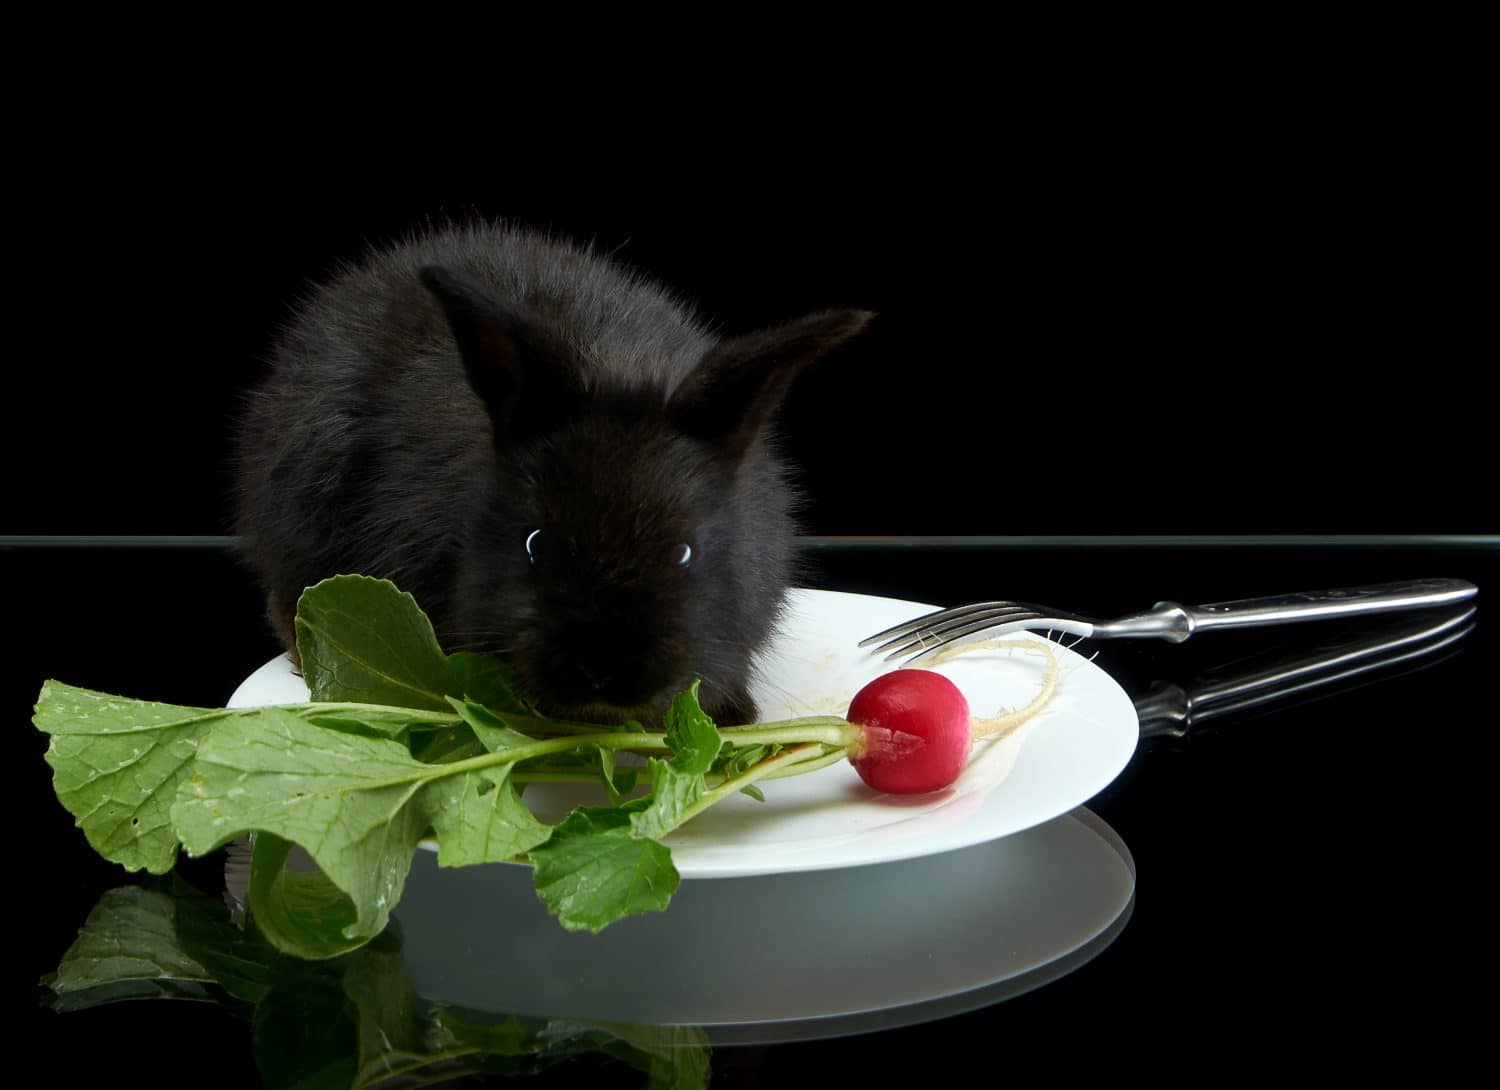 Giovane coniglio nero che mangia ravanello in piatto bianco su fondo nero